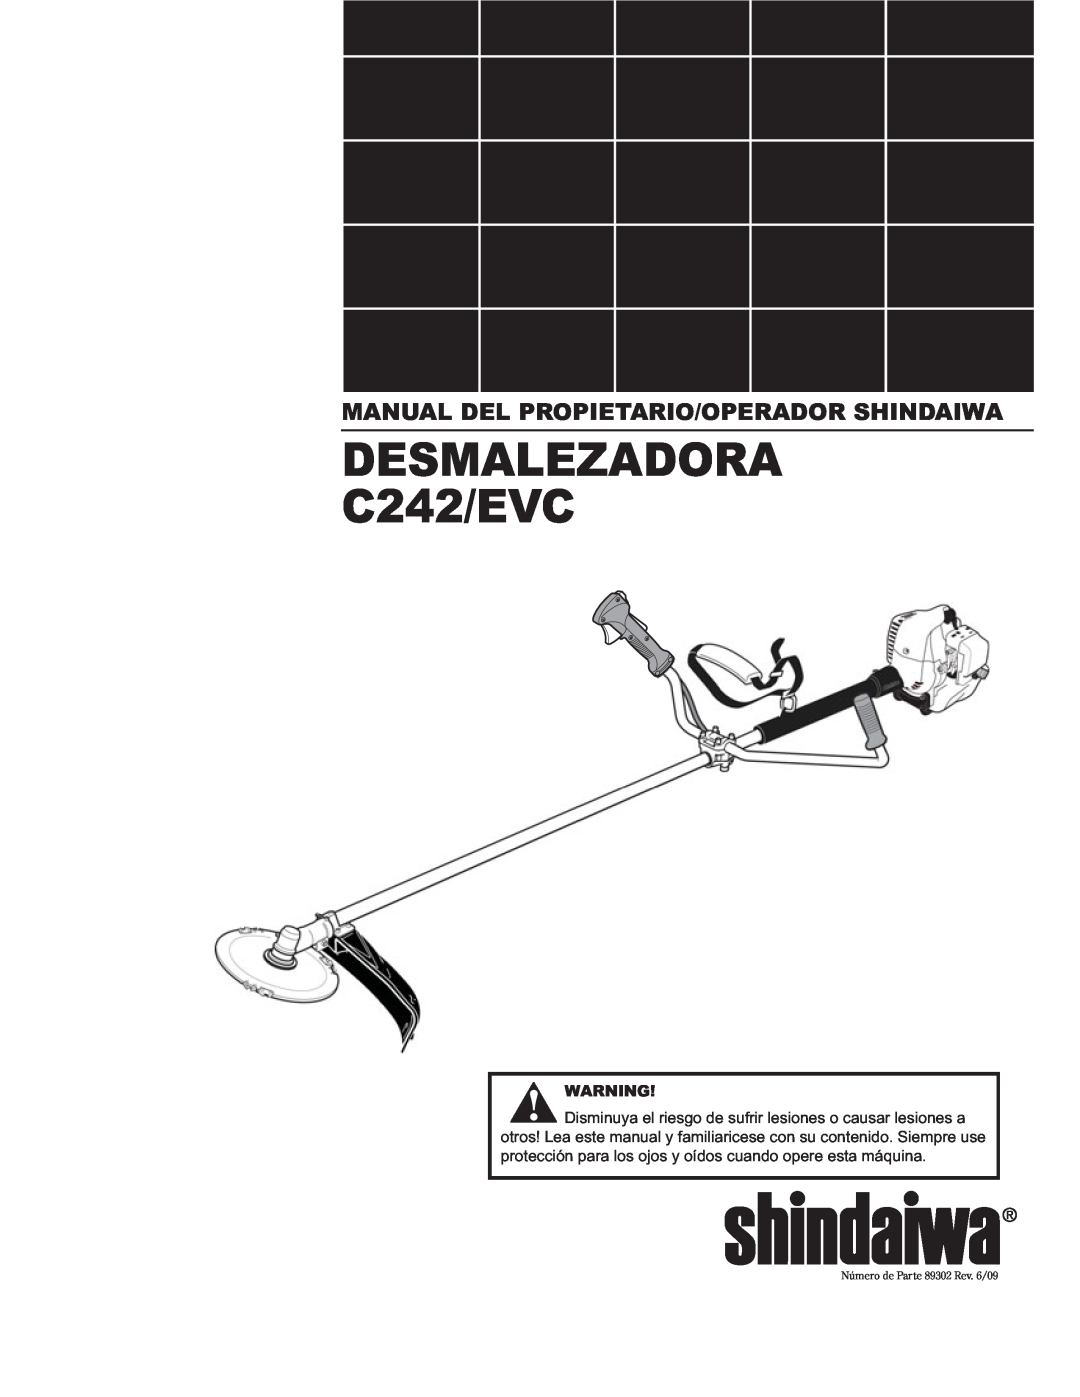 Shindaiwa manual DESMALEZADORA C242/EVC, Manual Del Propietario/Operador Shindaiwa, Número de Parte 89302 Rev. 6/09 